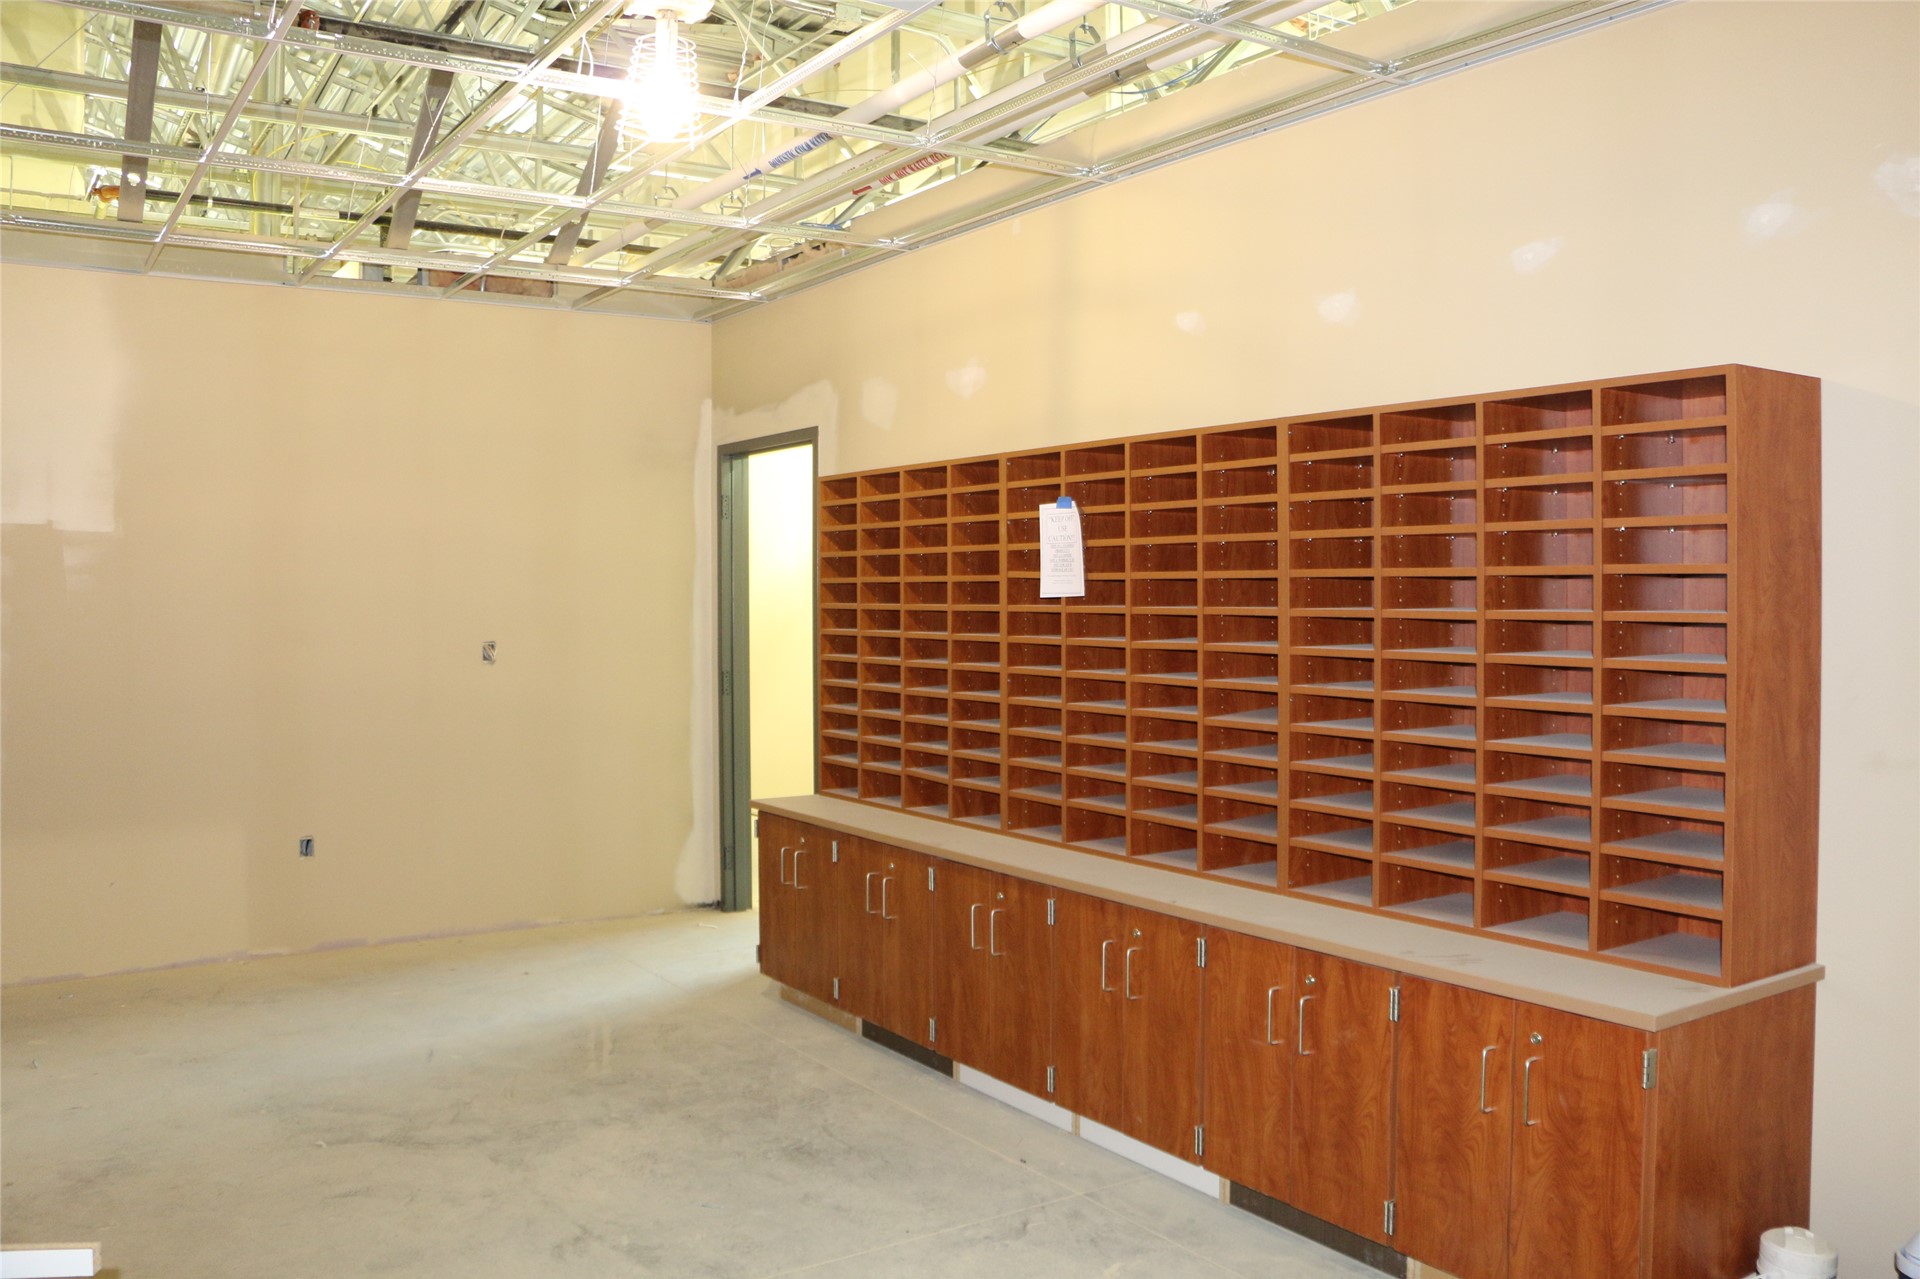 Main Office Workroom/Mailroom